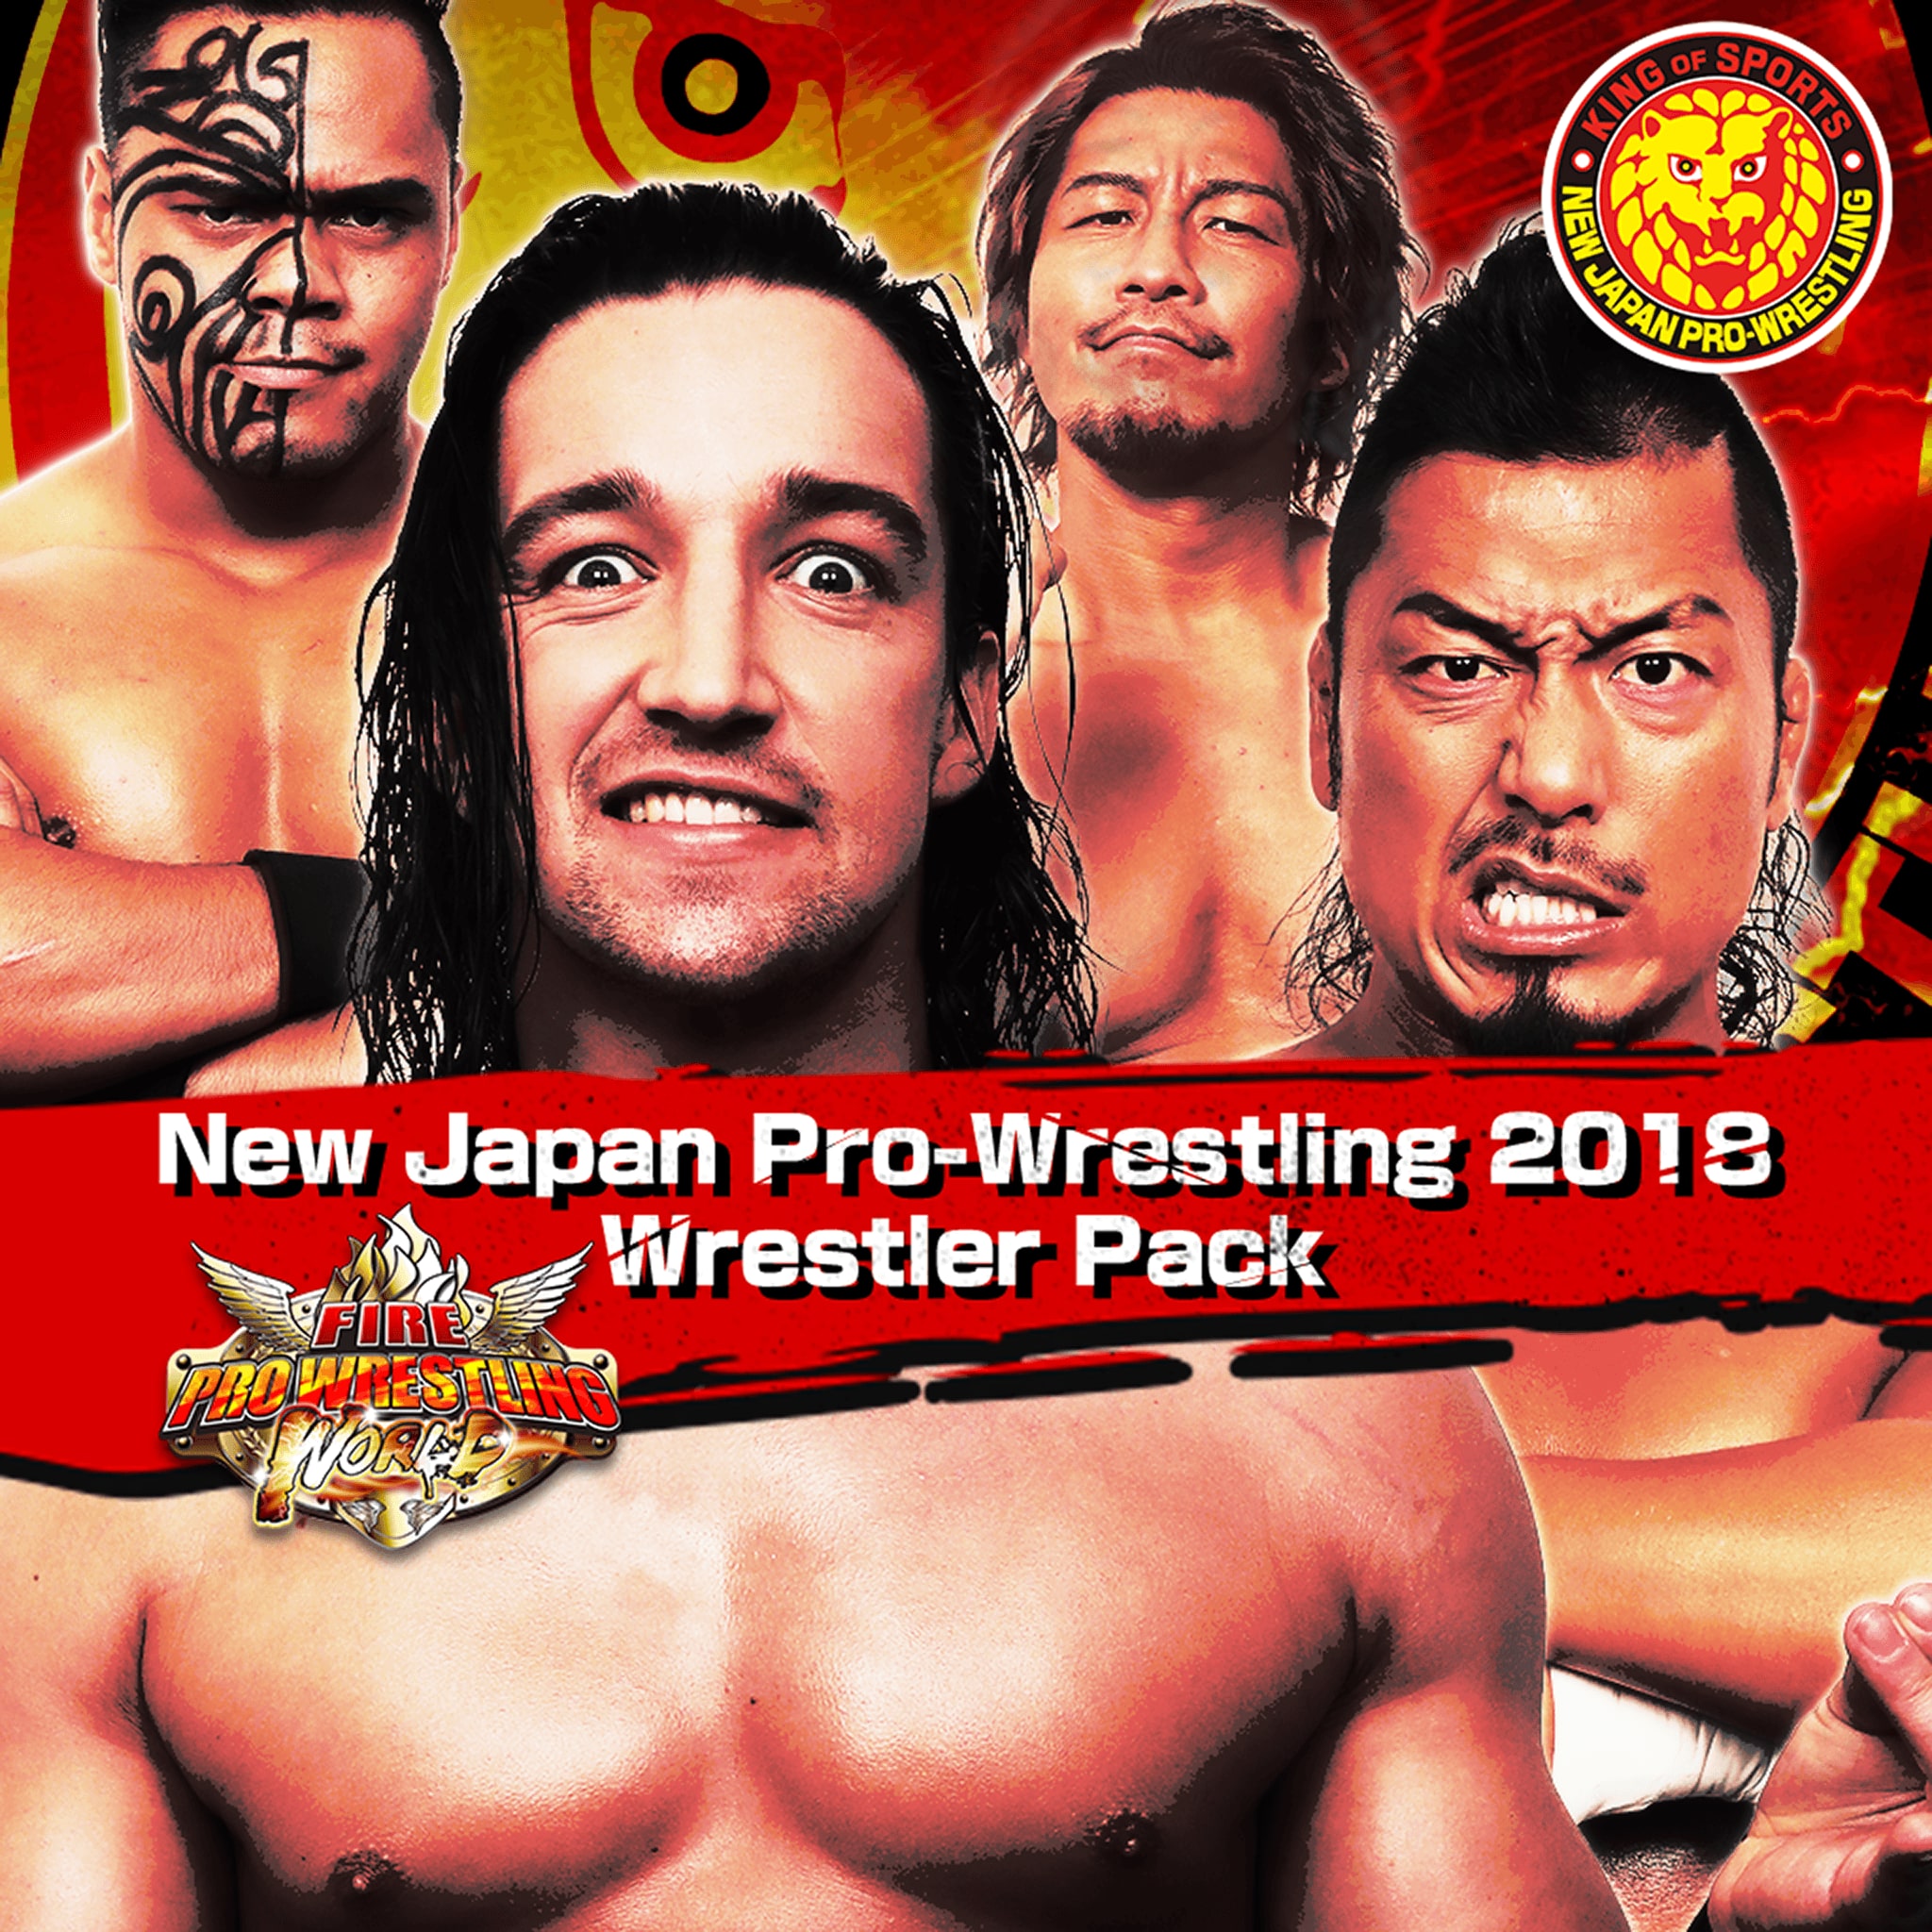 Fire Pro Wrestling World NJPW 2018 Wrestler Pack